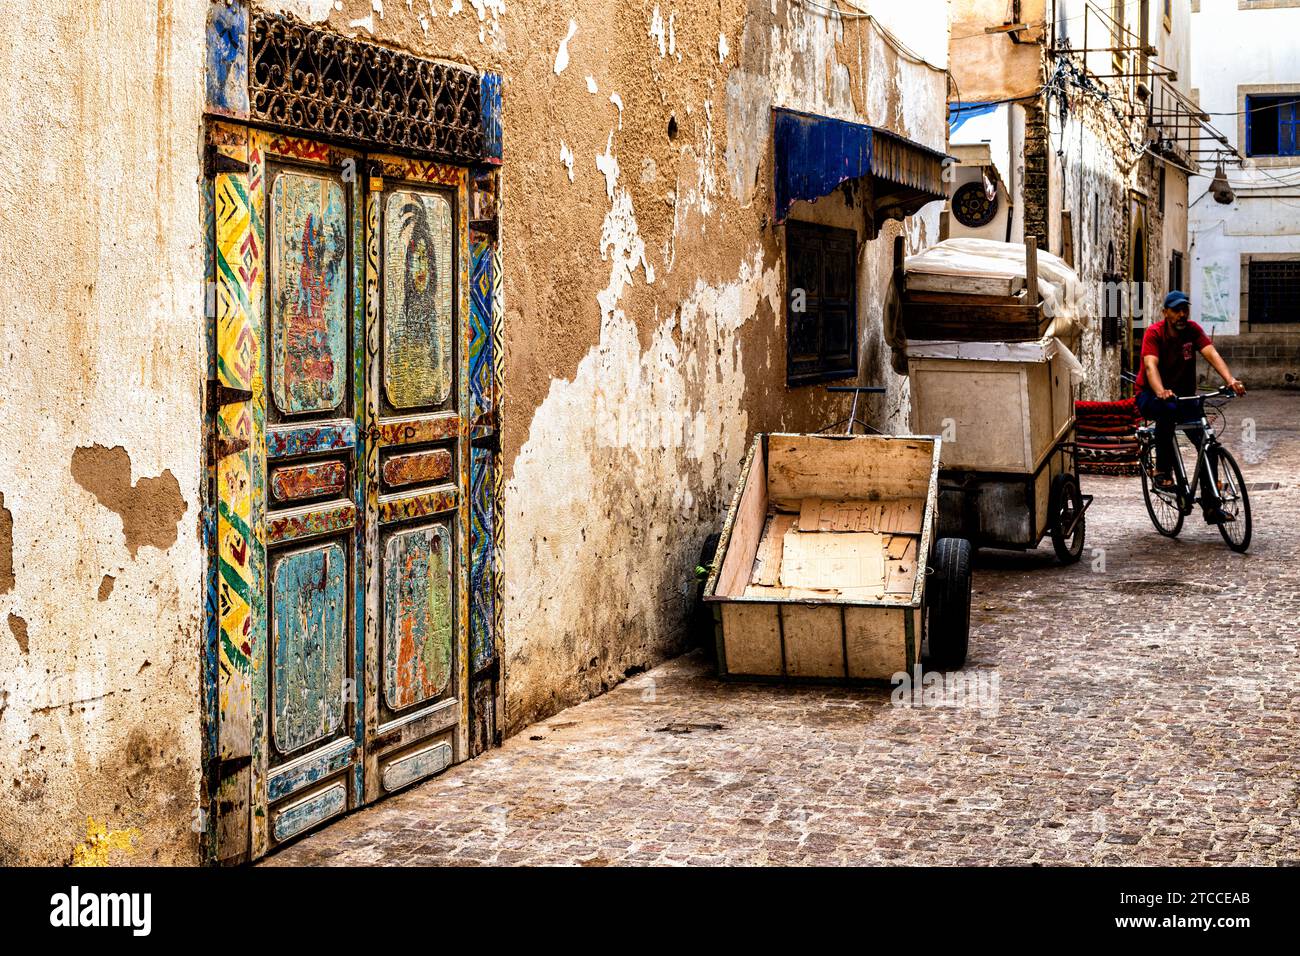 Essaouira, Maroc : porte en bois colorée donnant sur une ruelle étroite à l'intérieur de la ville Médina. Paysage urbain marocain. Banque D'Images